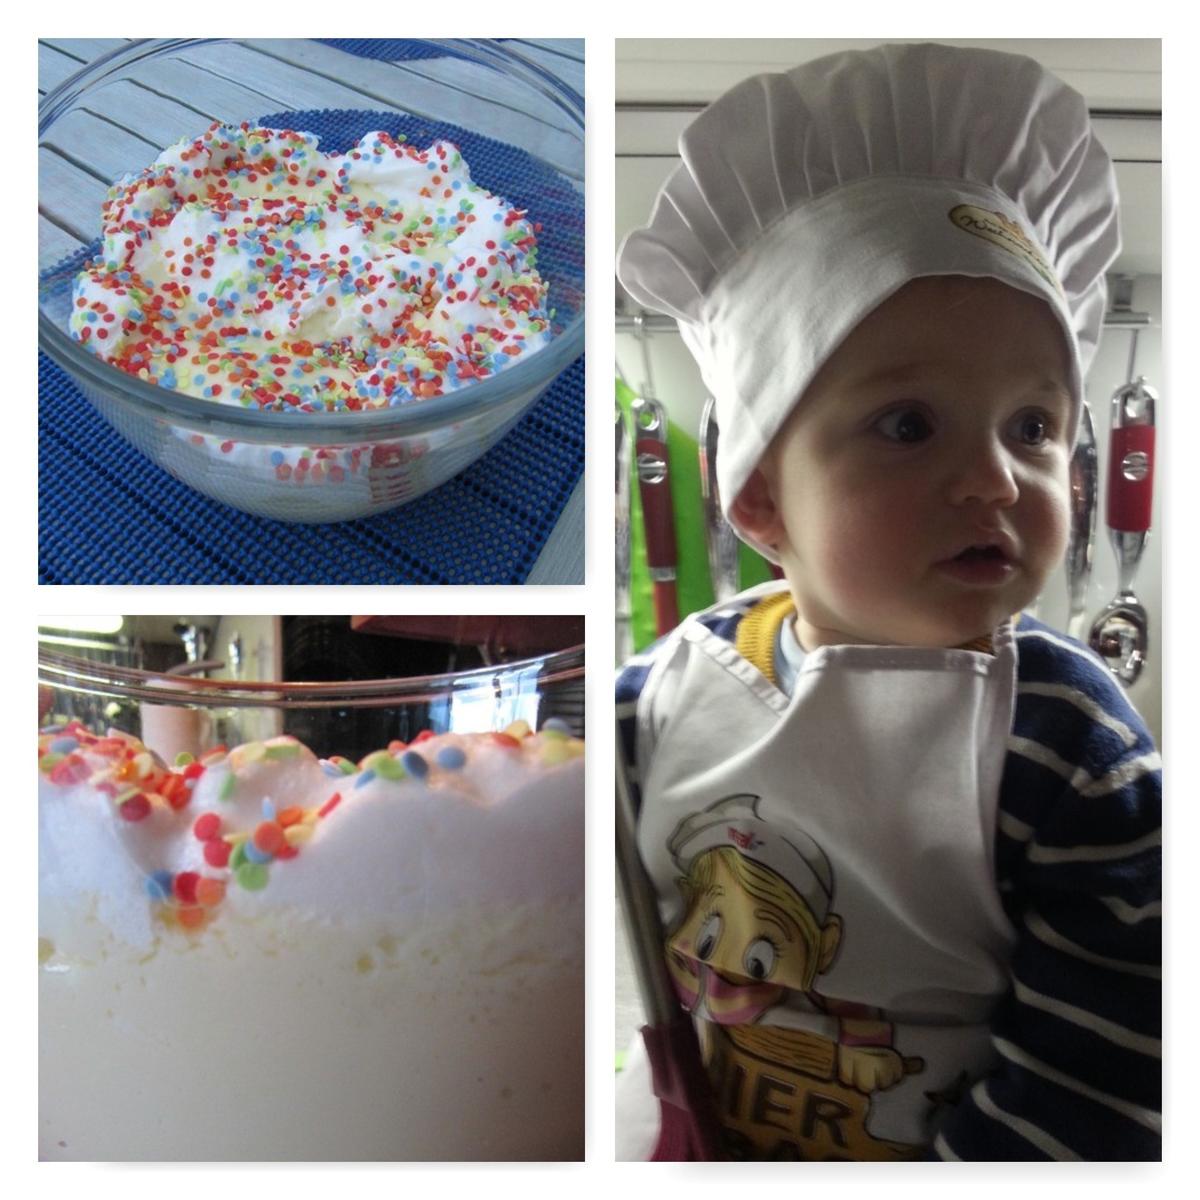 Vanille Pudding für Joni (Kinder lernen kochen) - Rezept - Bild Nr. 8